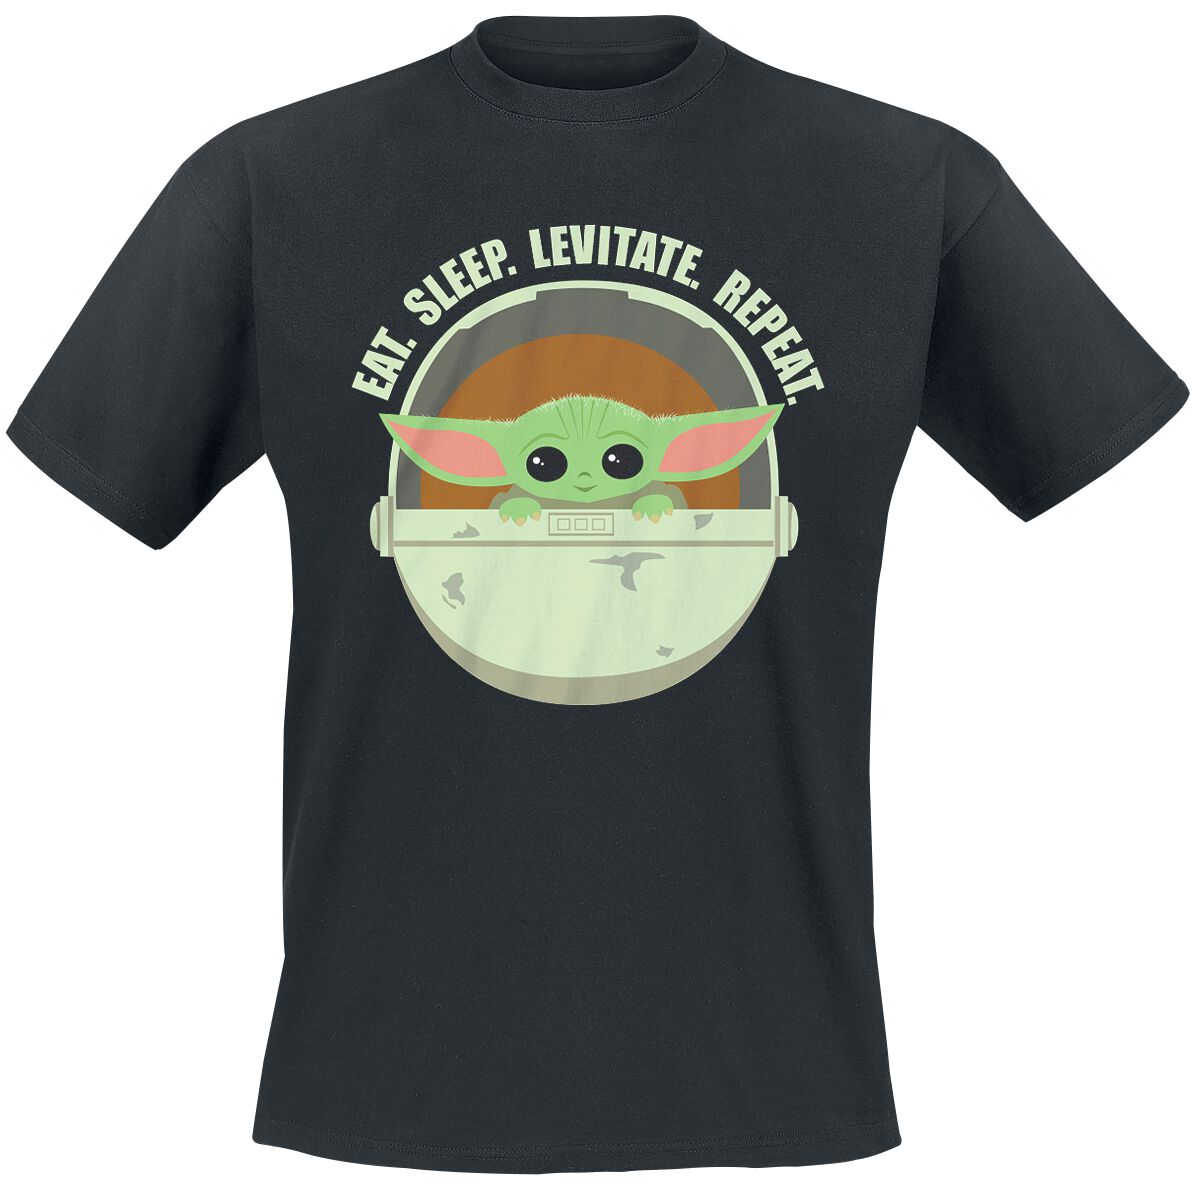 Star Wars T-Shirt - The Mandalorian - Eat. Sleep. Levitate. Repeat. - Grogu - S bis 4XL - für Männer - Größe M - schwarz  - Lizenzierter Fanartikel